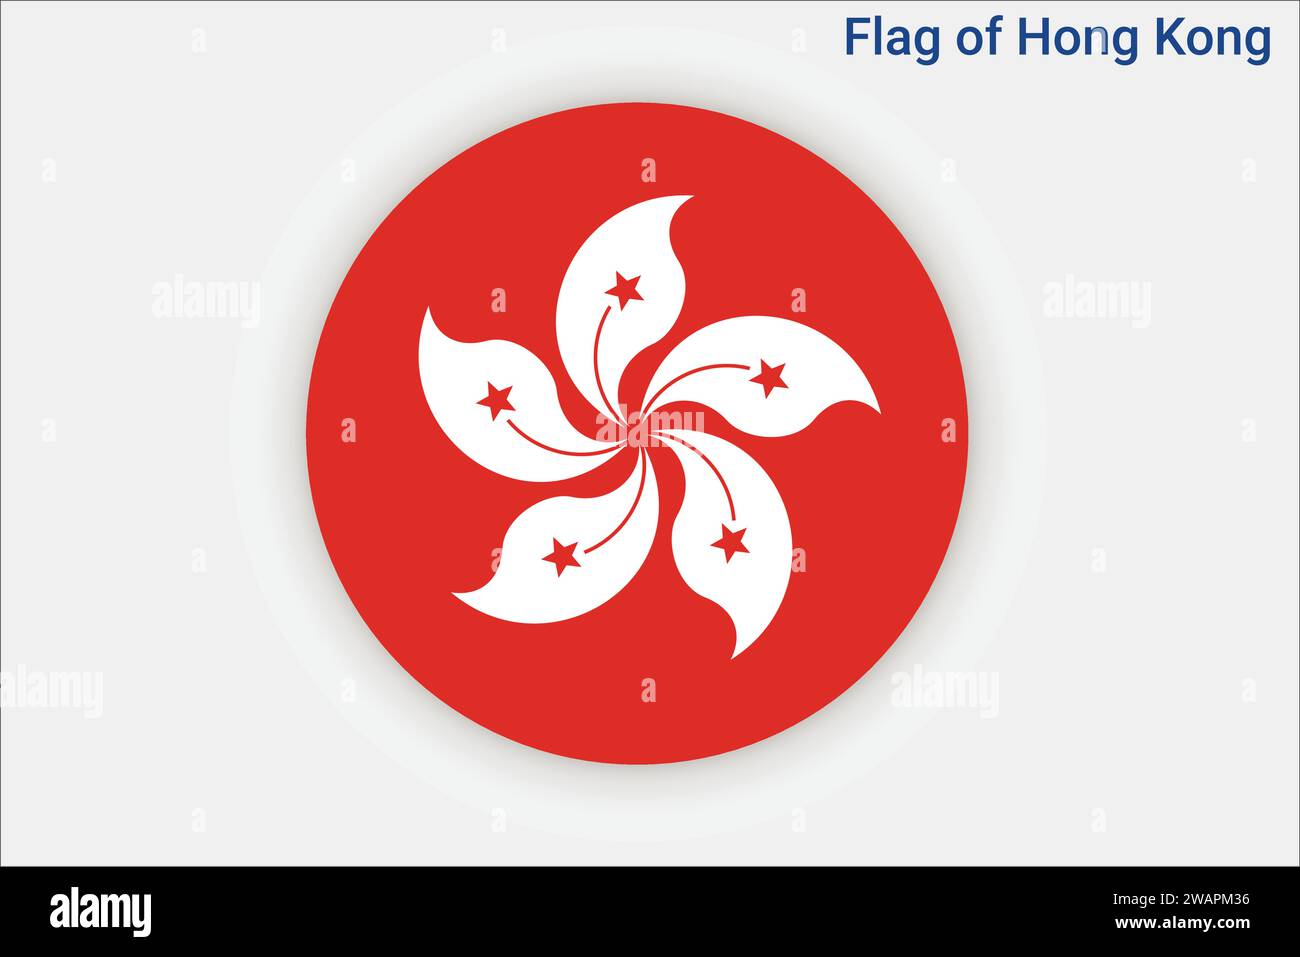 Drapeau détaillé élevé de Hong Kong. Drapeau national de Hong Kong. Asie. Illustration 3D. Illustration de Vecteur